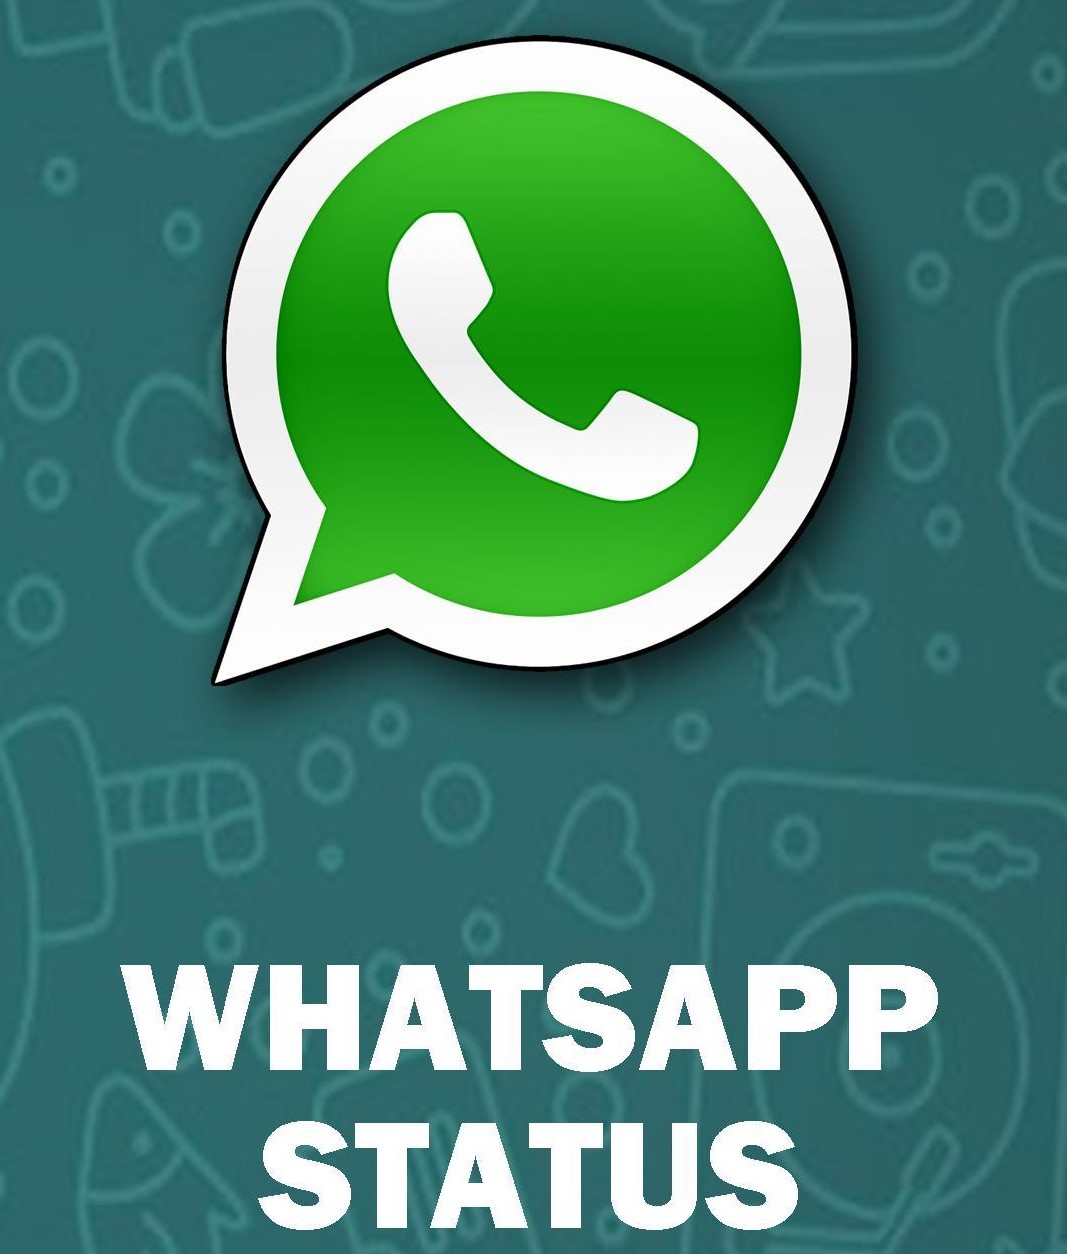 whatsapp status server